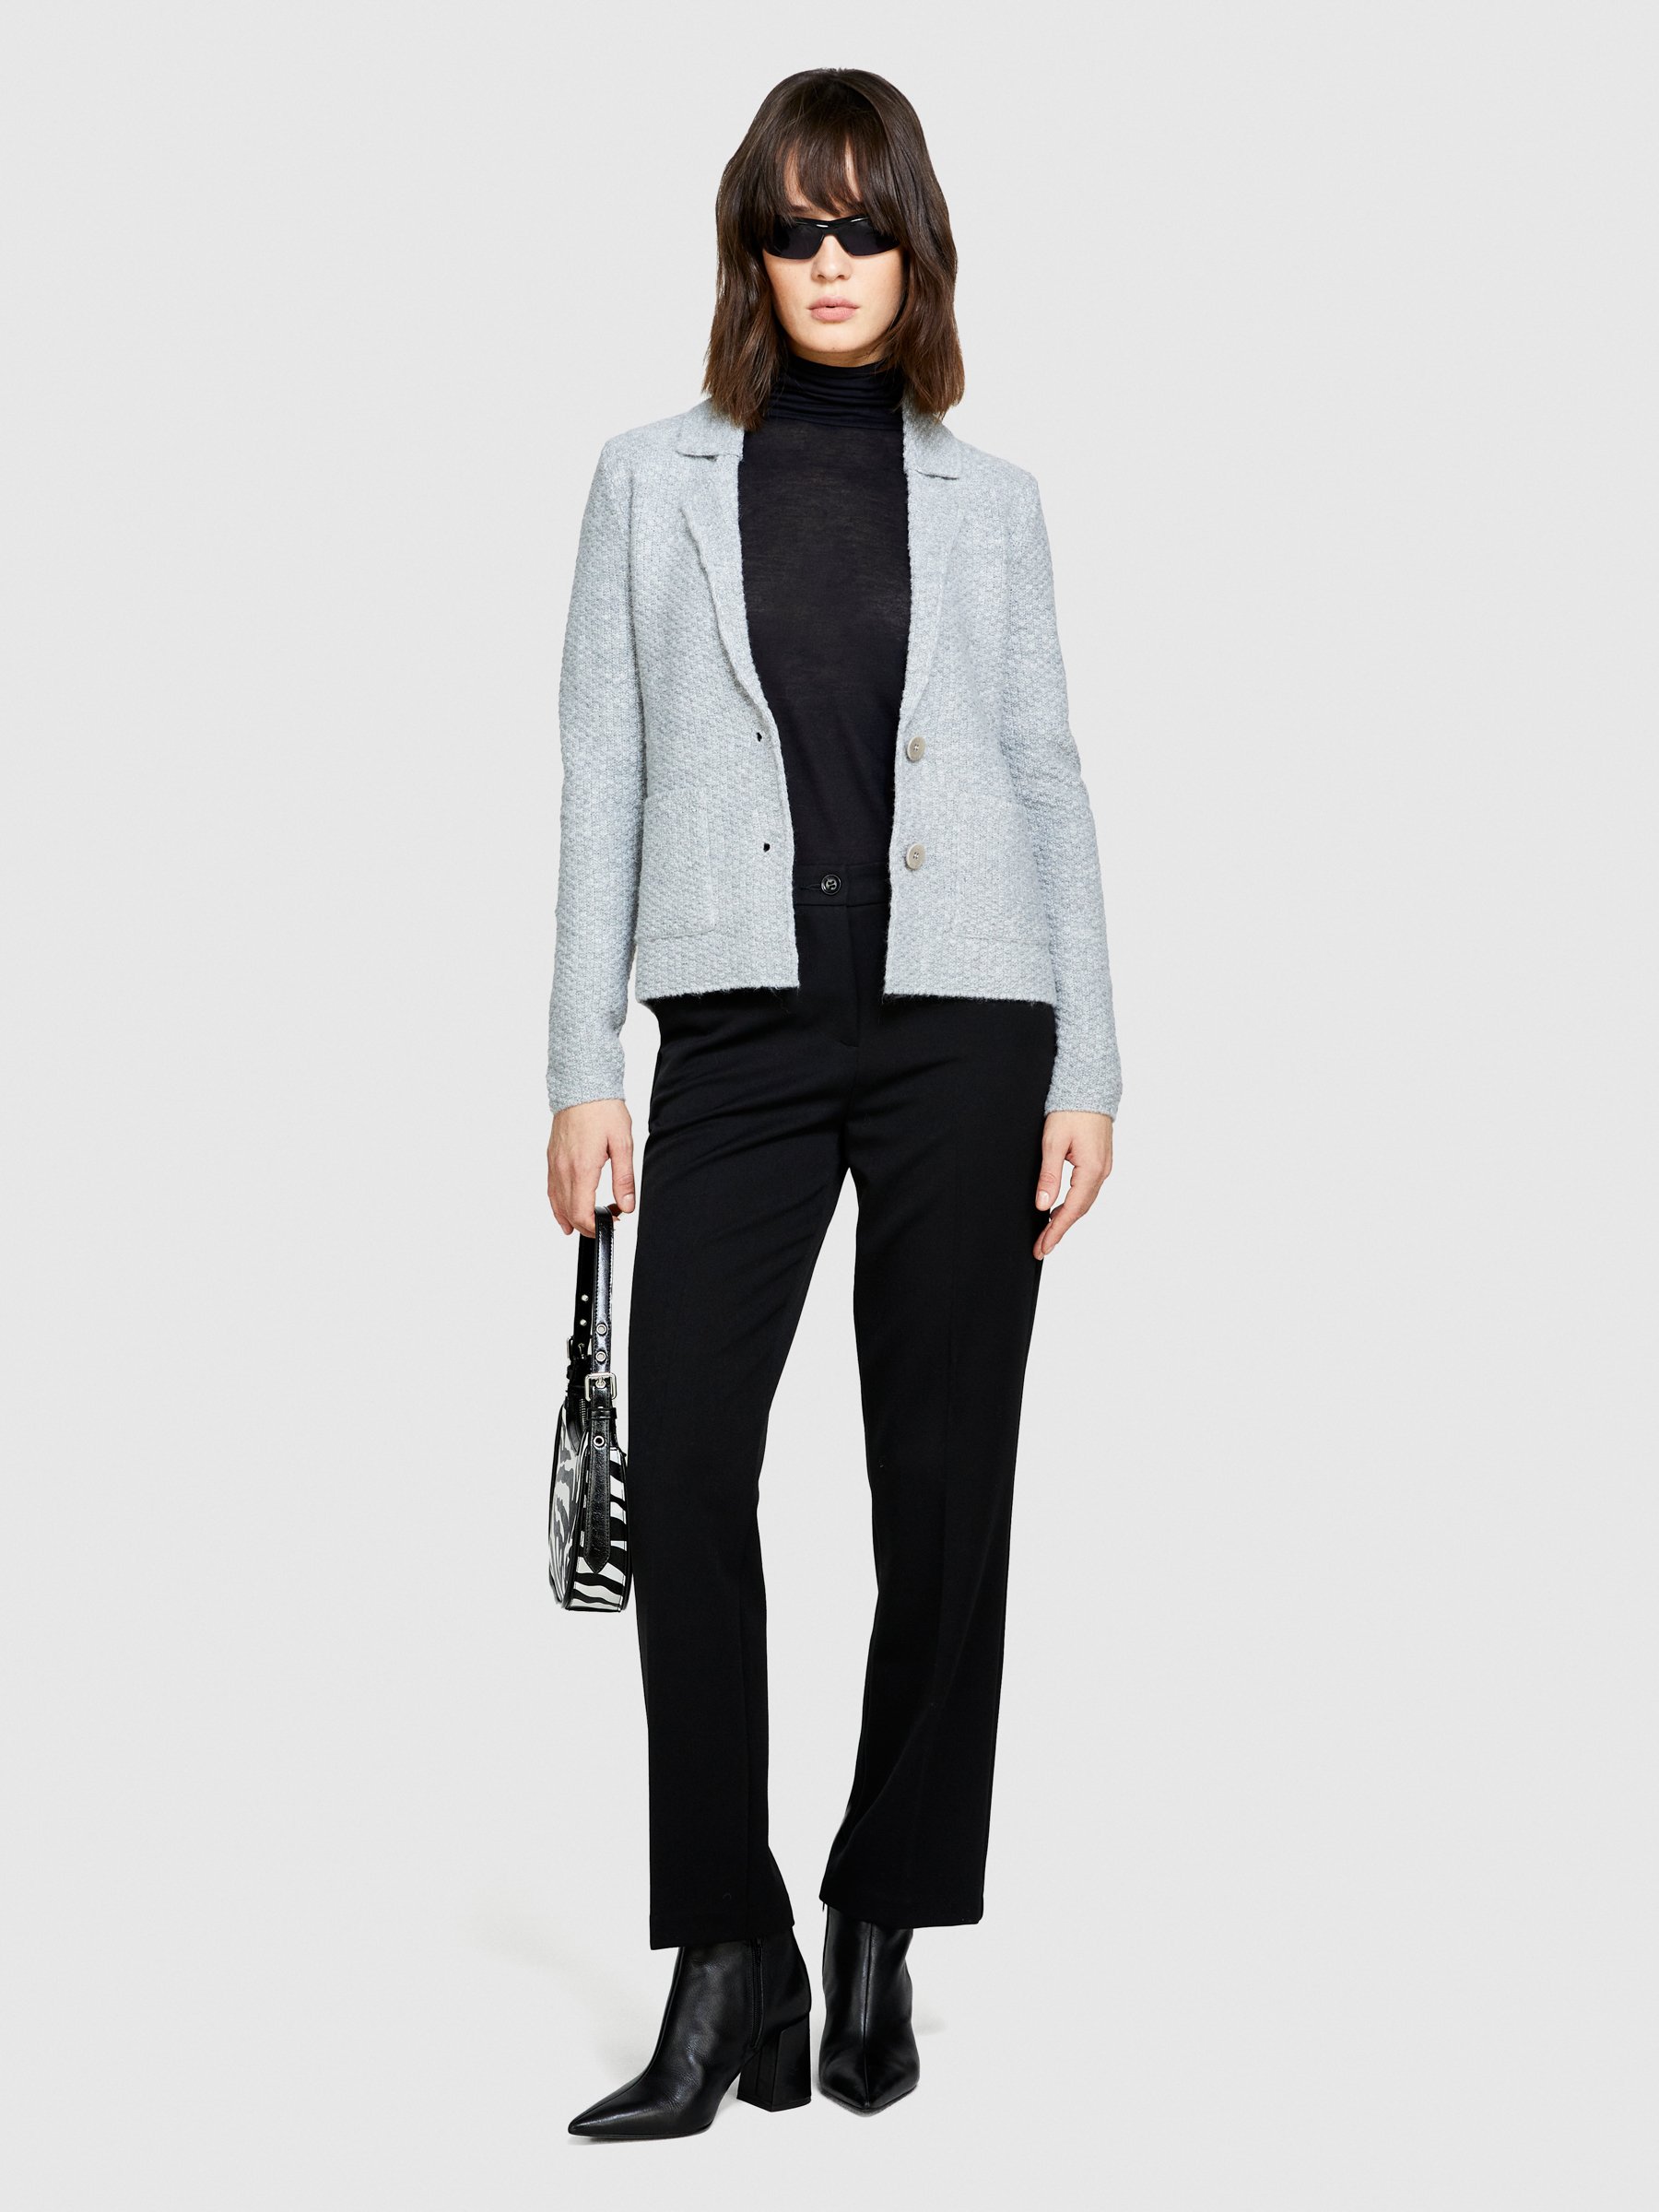 Sisley - Knit Blazer, Woman, Light Gray, Size: M